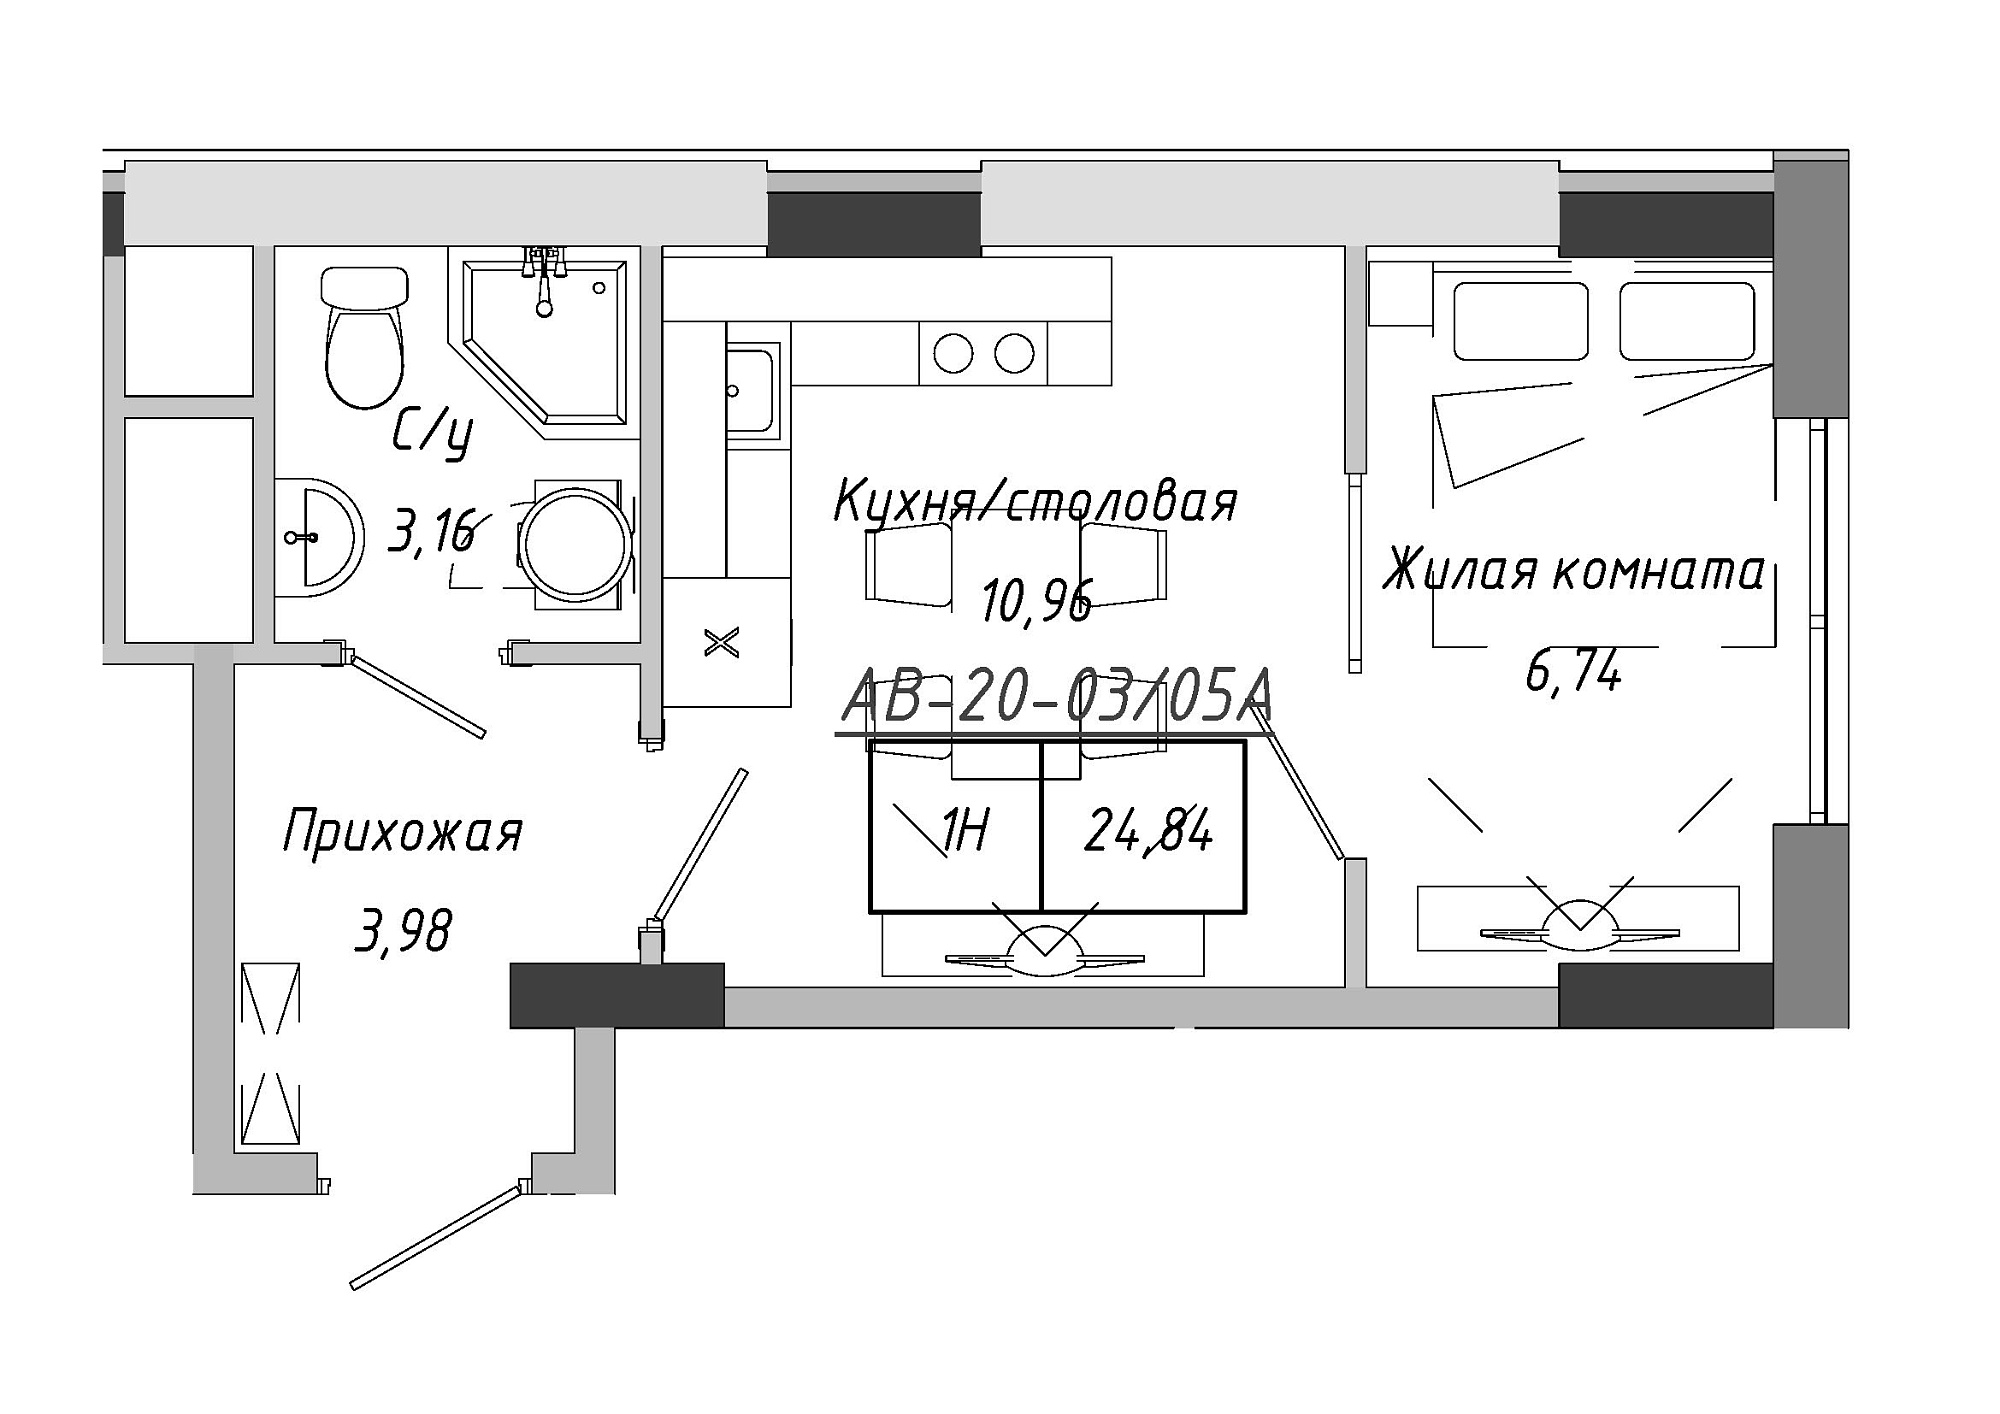 Планування 1-к квартира площею 24.84м2, AB-20-03/0005а.